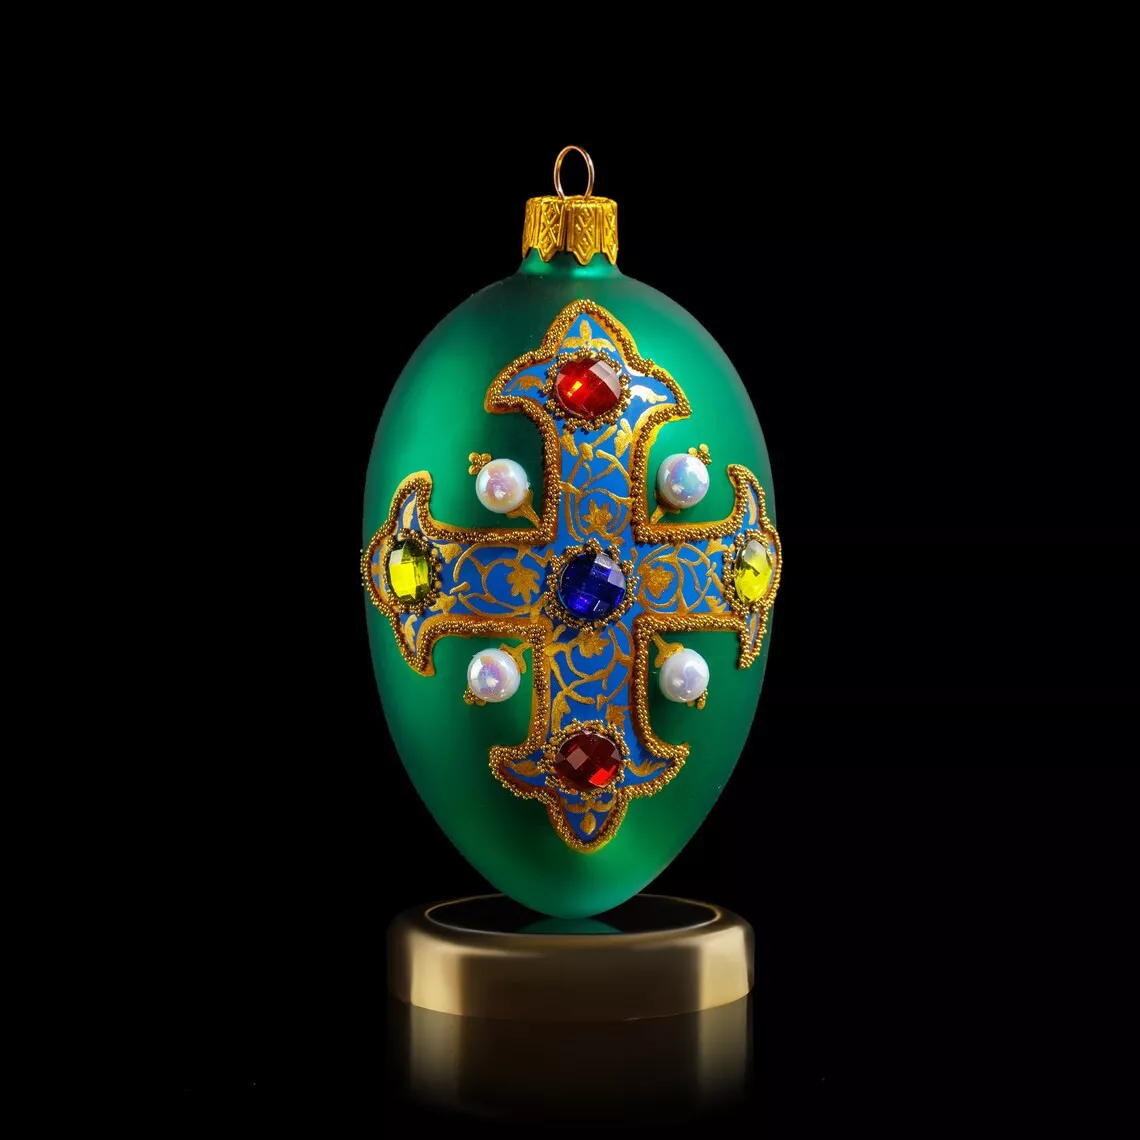 Игрушка новогодняя Crystal Christmas Royal Emblem Green, размер 12х6 см (CRE004) - Фото nav 2